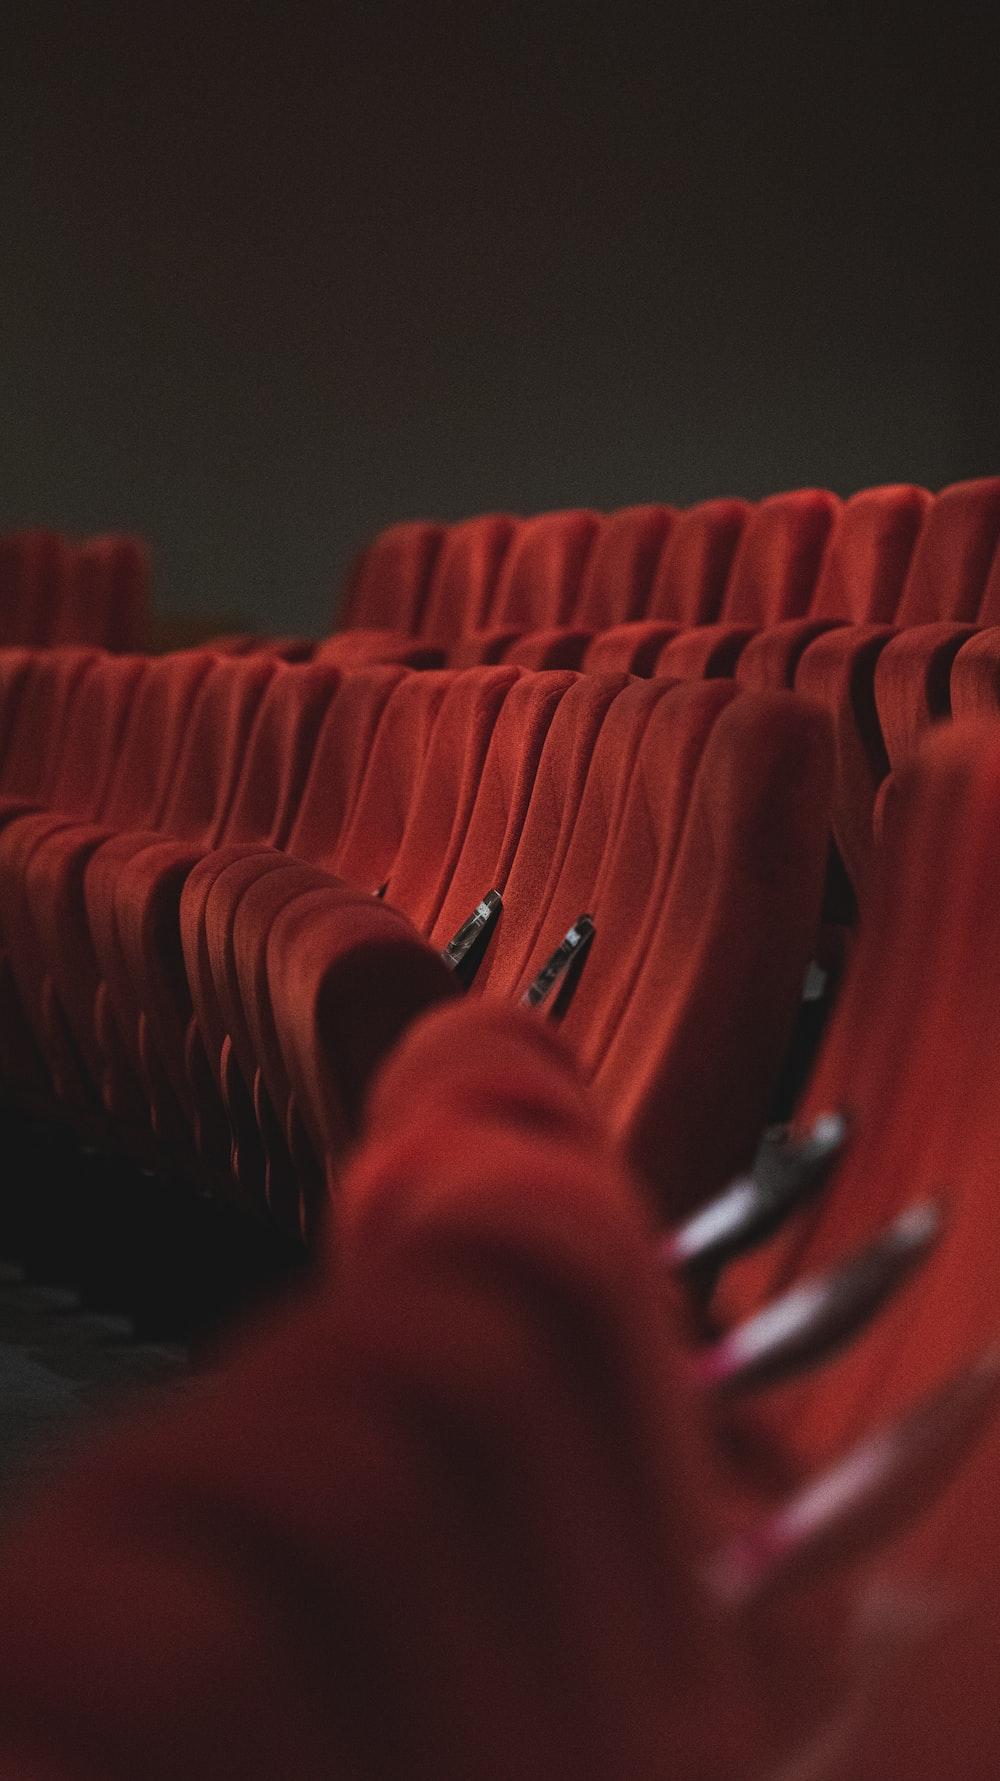 عکس صندلی های سالن سینما از نمای جالب و عکاسی فوق العاده 